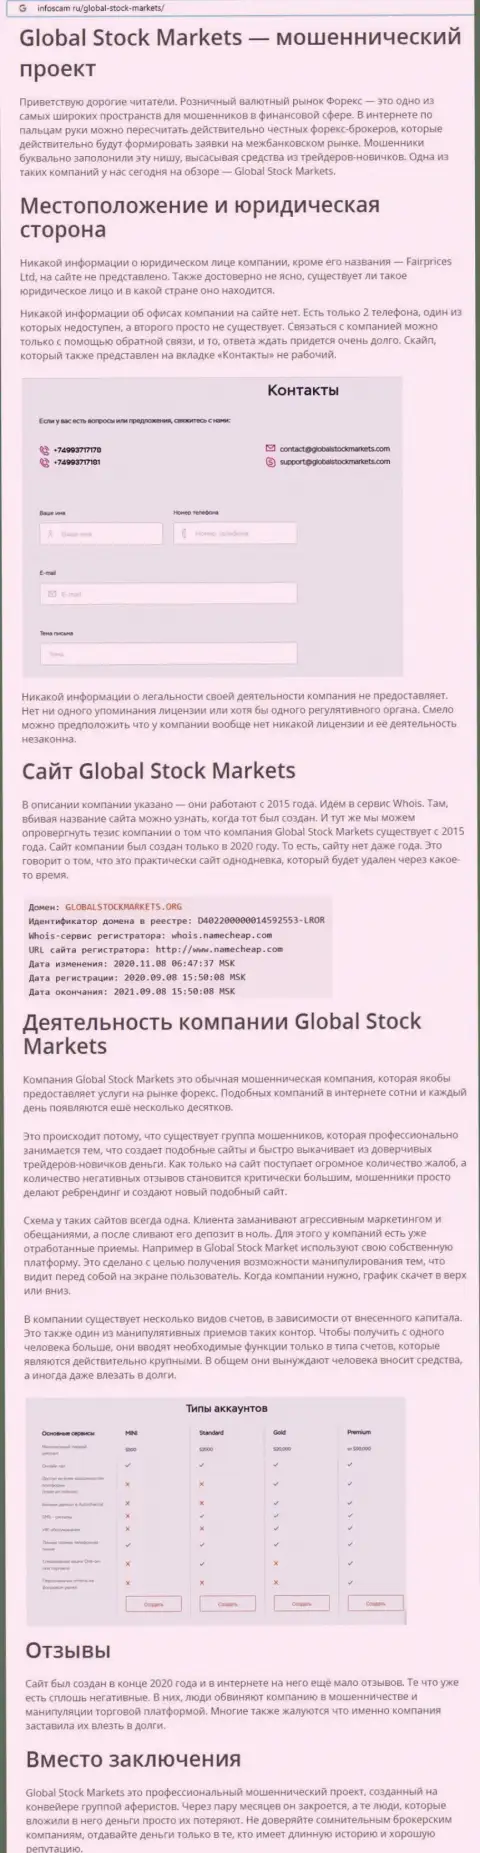 НЕ ОПАСНО ли работать с компанией GlobalStockMarkets Org ??? Обзор конторы